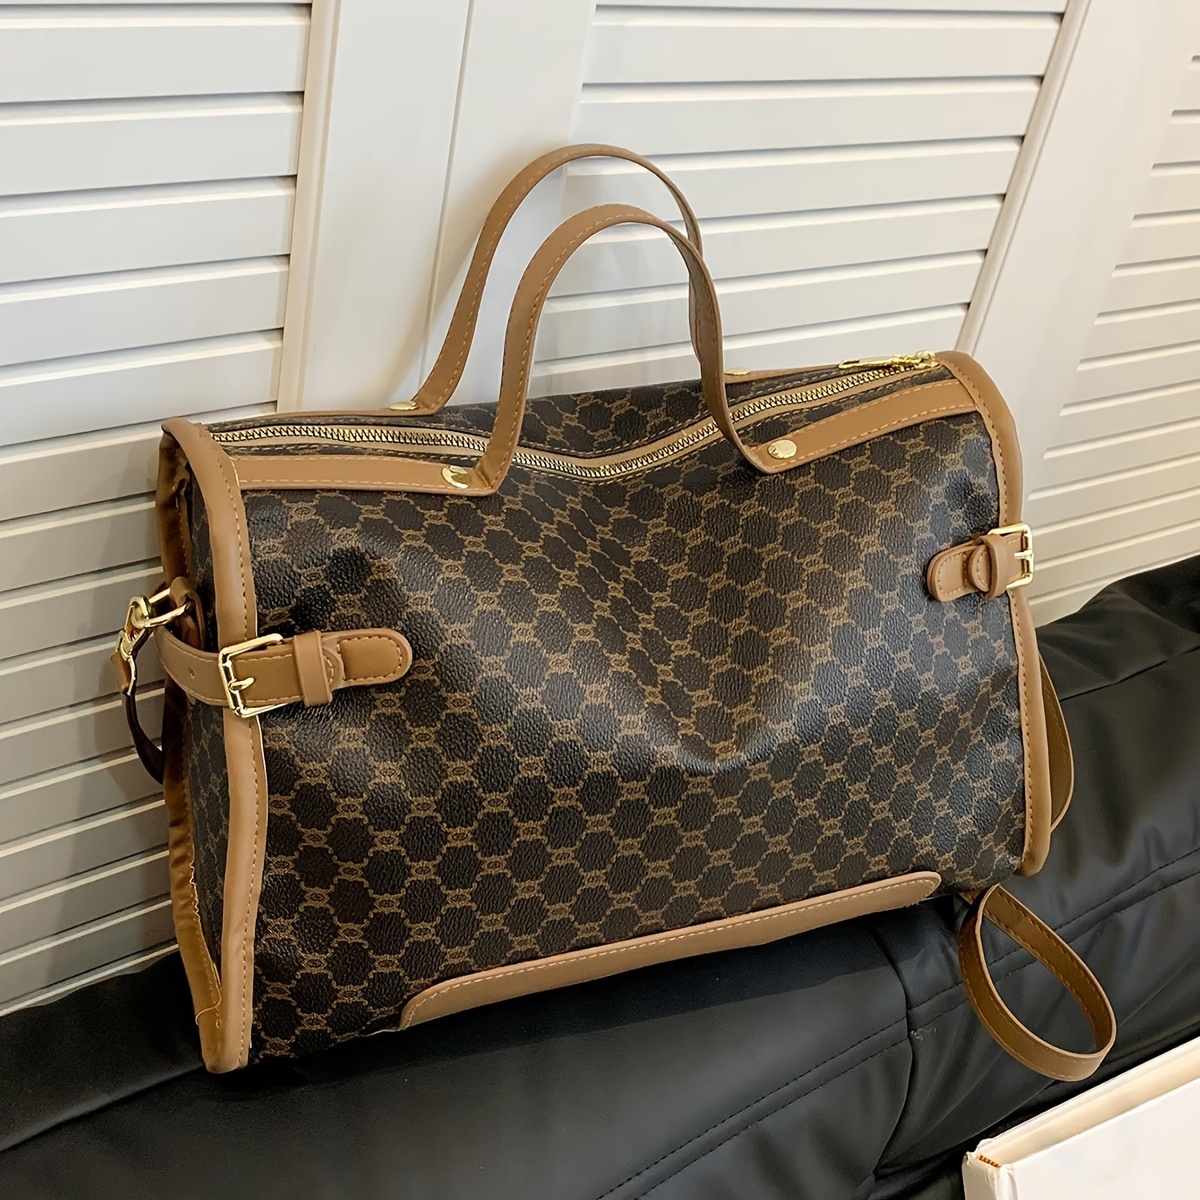 

Large Capacity Tote Bag, Pu Vintage Pattern Shoulder Bag, Women's Fashion Handbag For Travel, Adjustable Strap Shoulder Bag